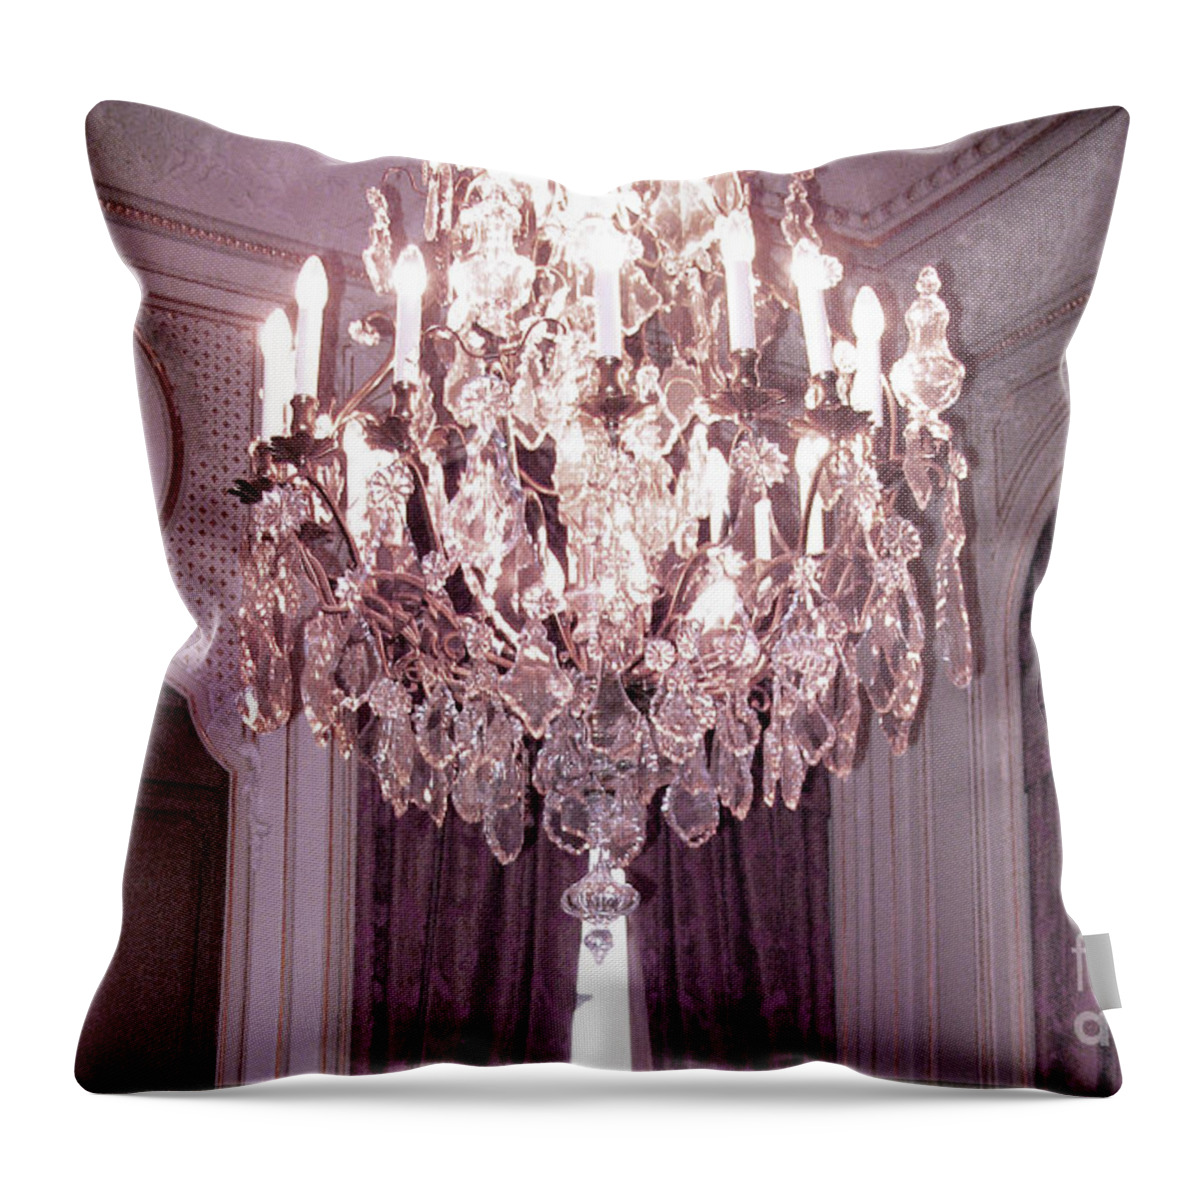 Paris Hotel Regina Crystal Chandelier Paris French Crystal Chandelier Prints Home Decor Throw Pillow